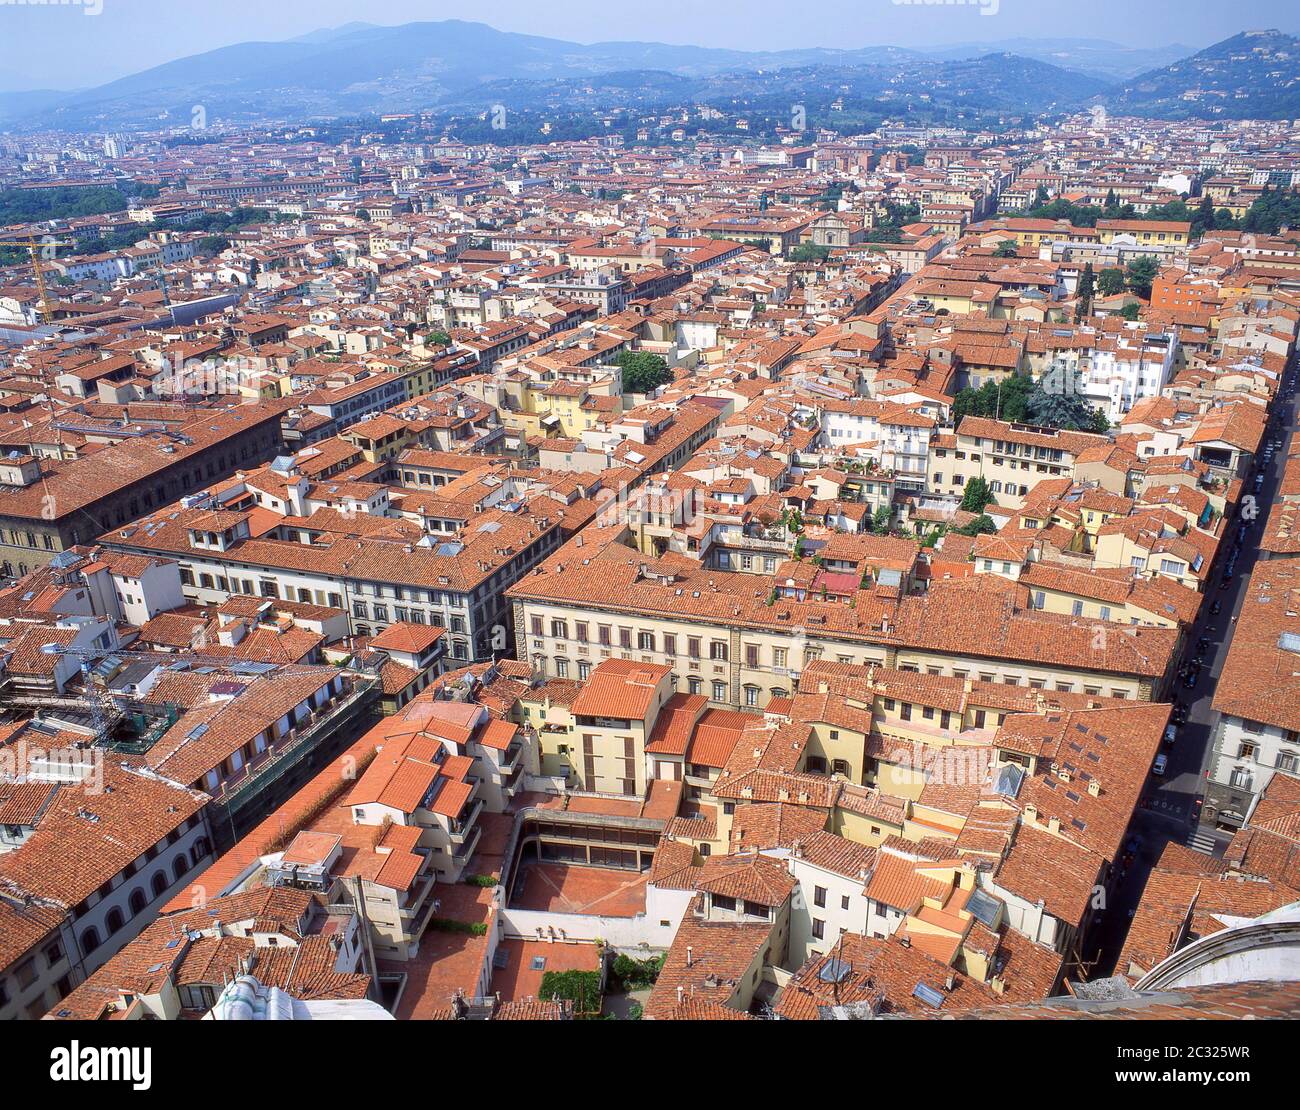 Vue sur la vieille ville depuis Piazzale Michelangelo, Florence (Firenze), région Toscane, Italie Banque D'Images